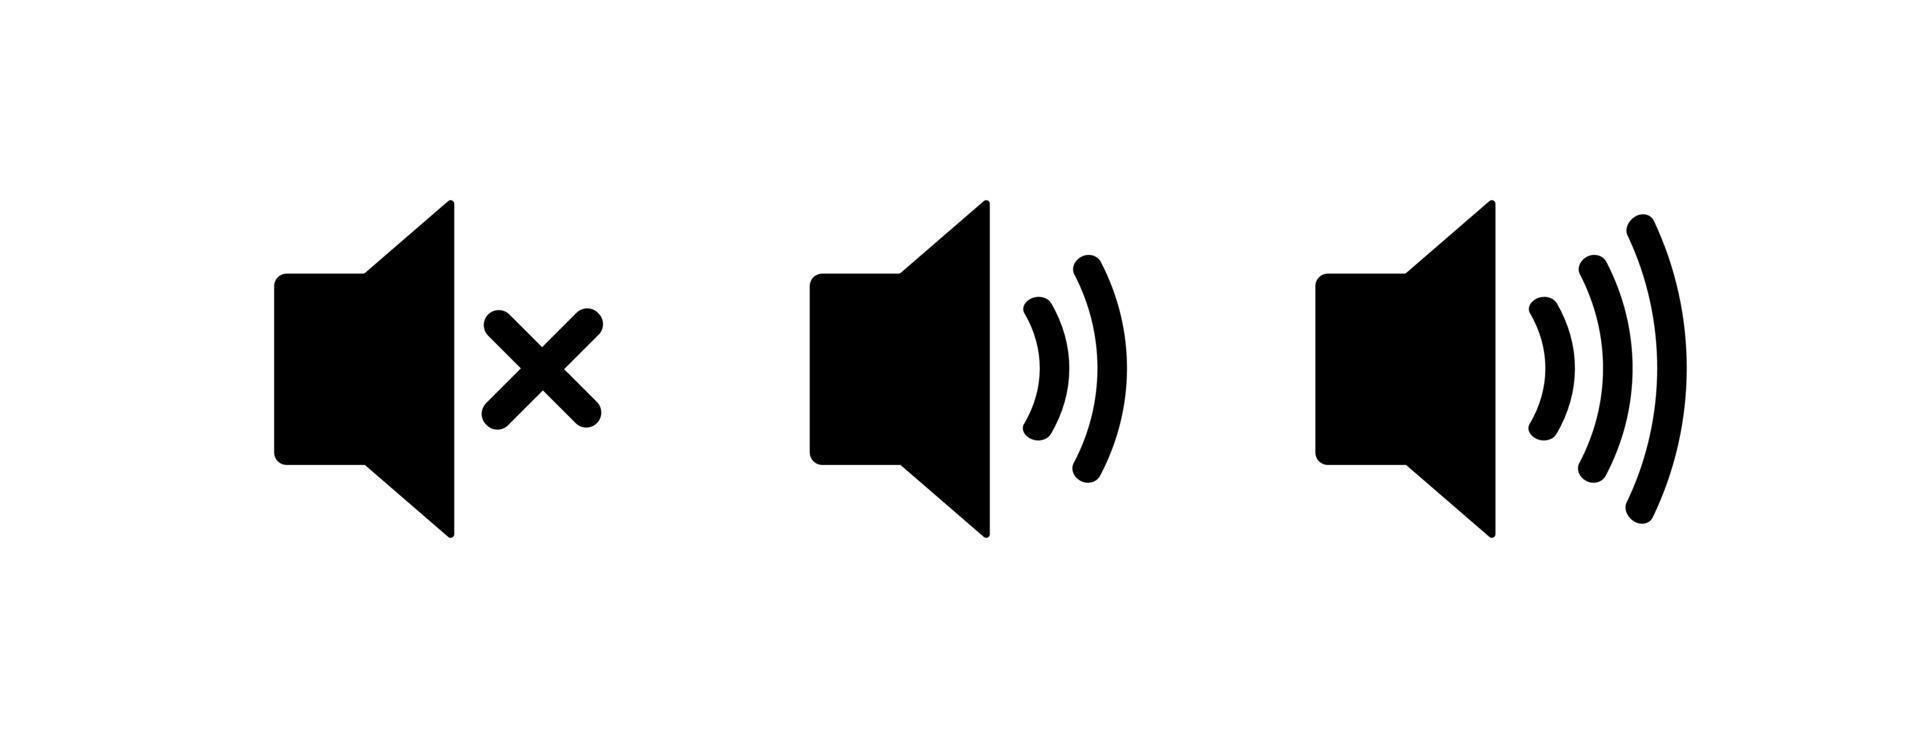 Vektor-Lautsprecher-Icon-Set solated auf weißem Hintergrund vektor